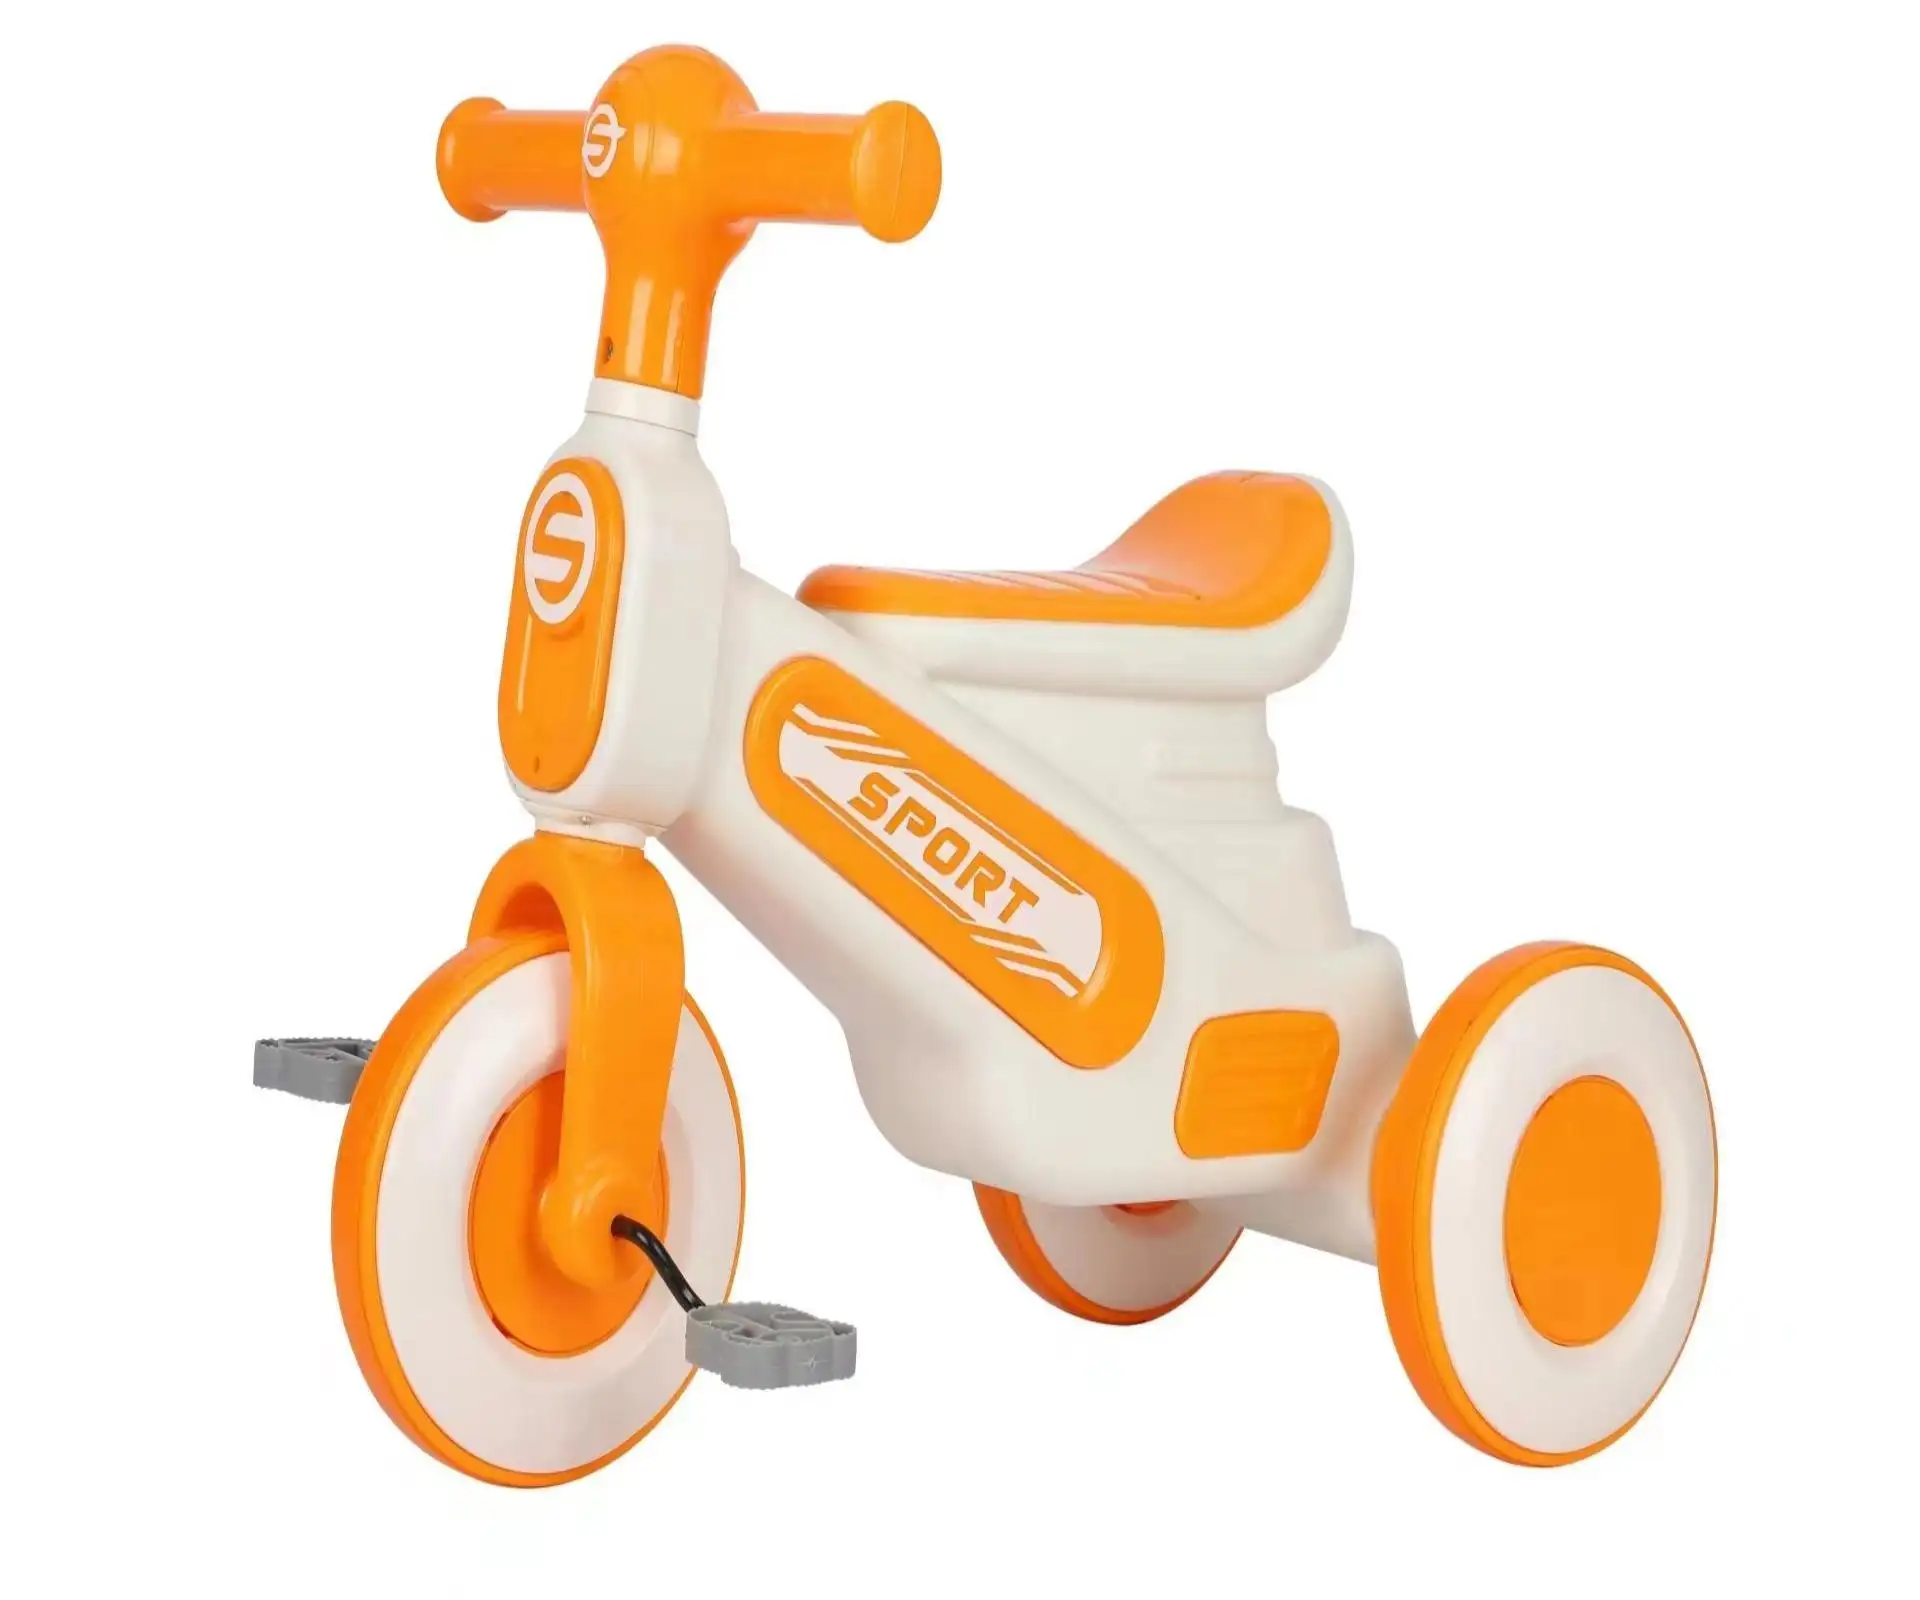 Ucuz çocuk triportörü itme kolu ile/bebek trike ile müzik ve ışık/çocuklar için metal üç tekerlekli bisiklet satış